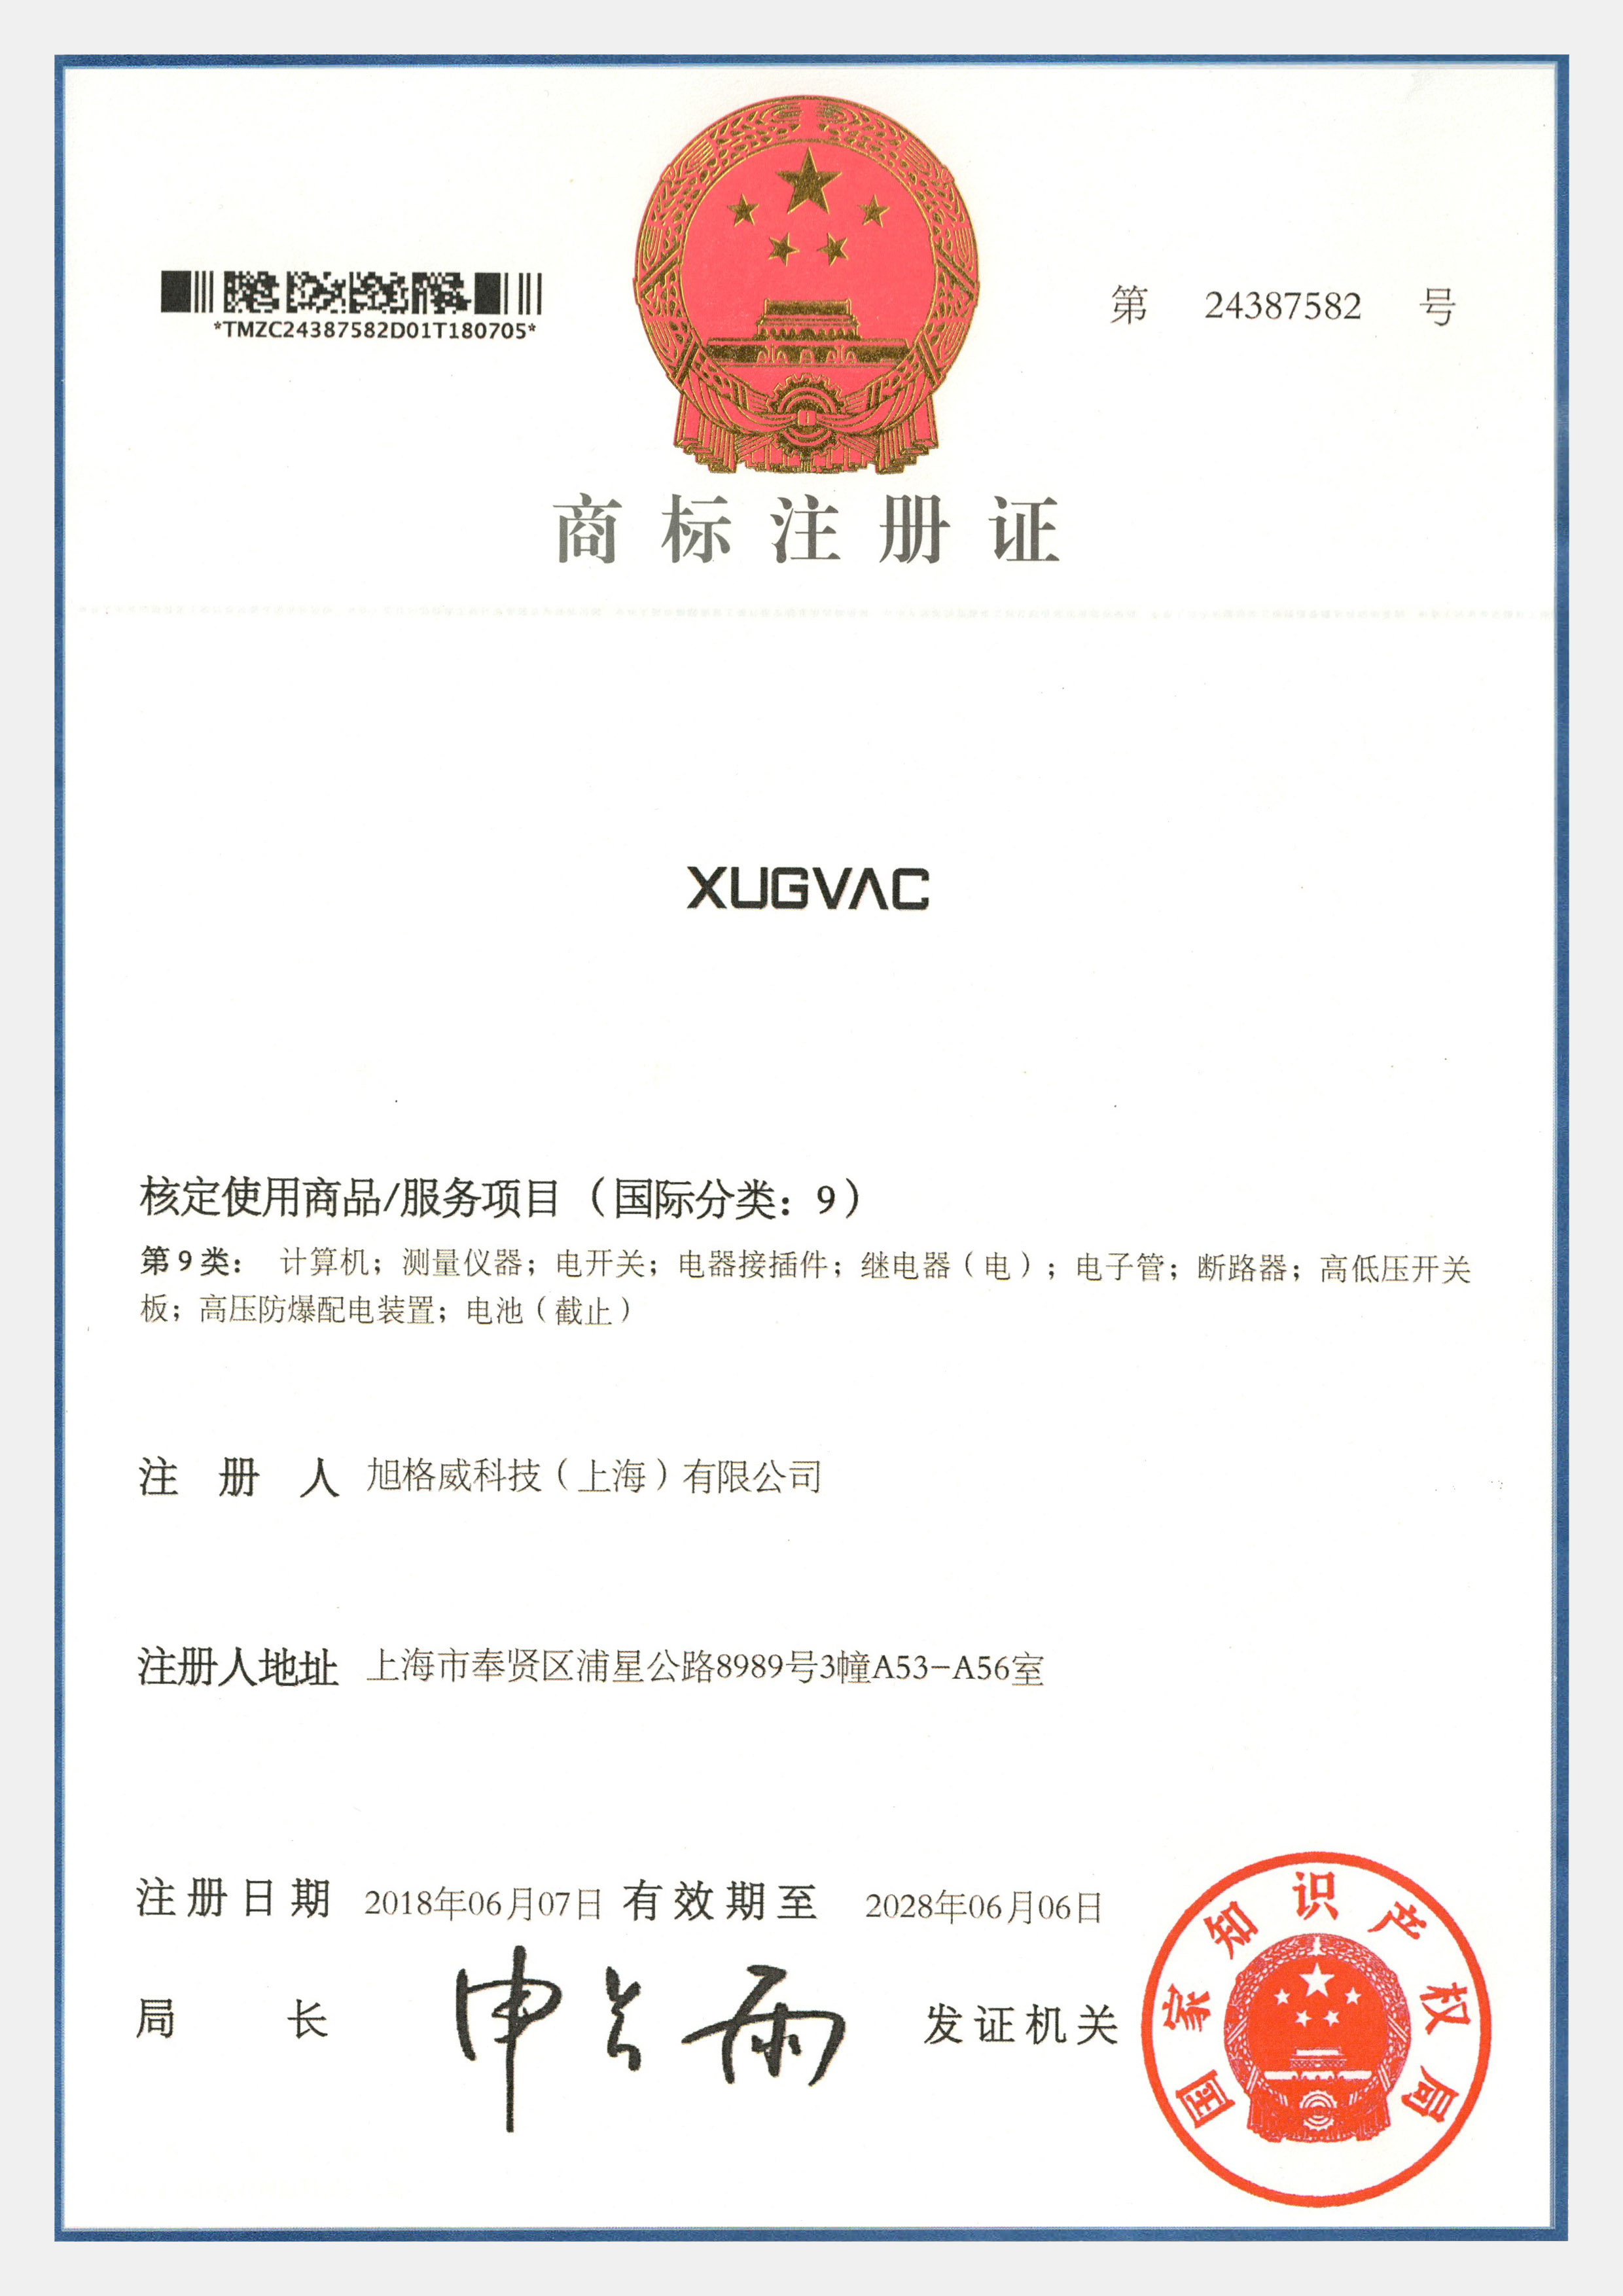 XUGVAC trademark registration certificate